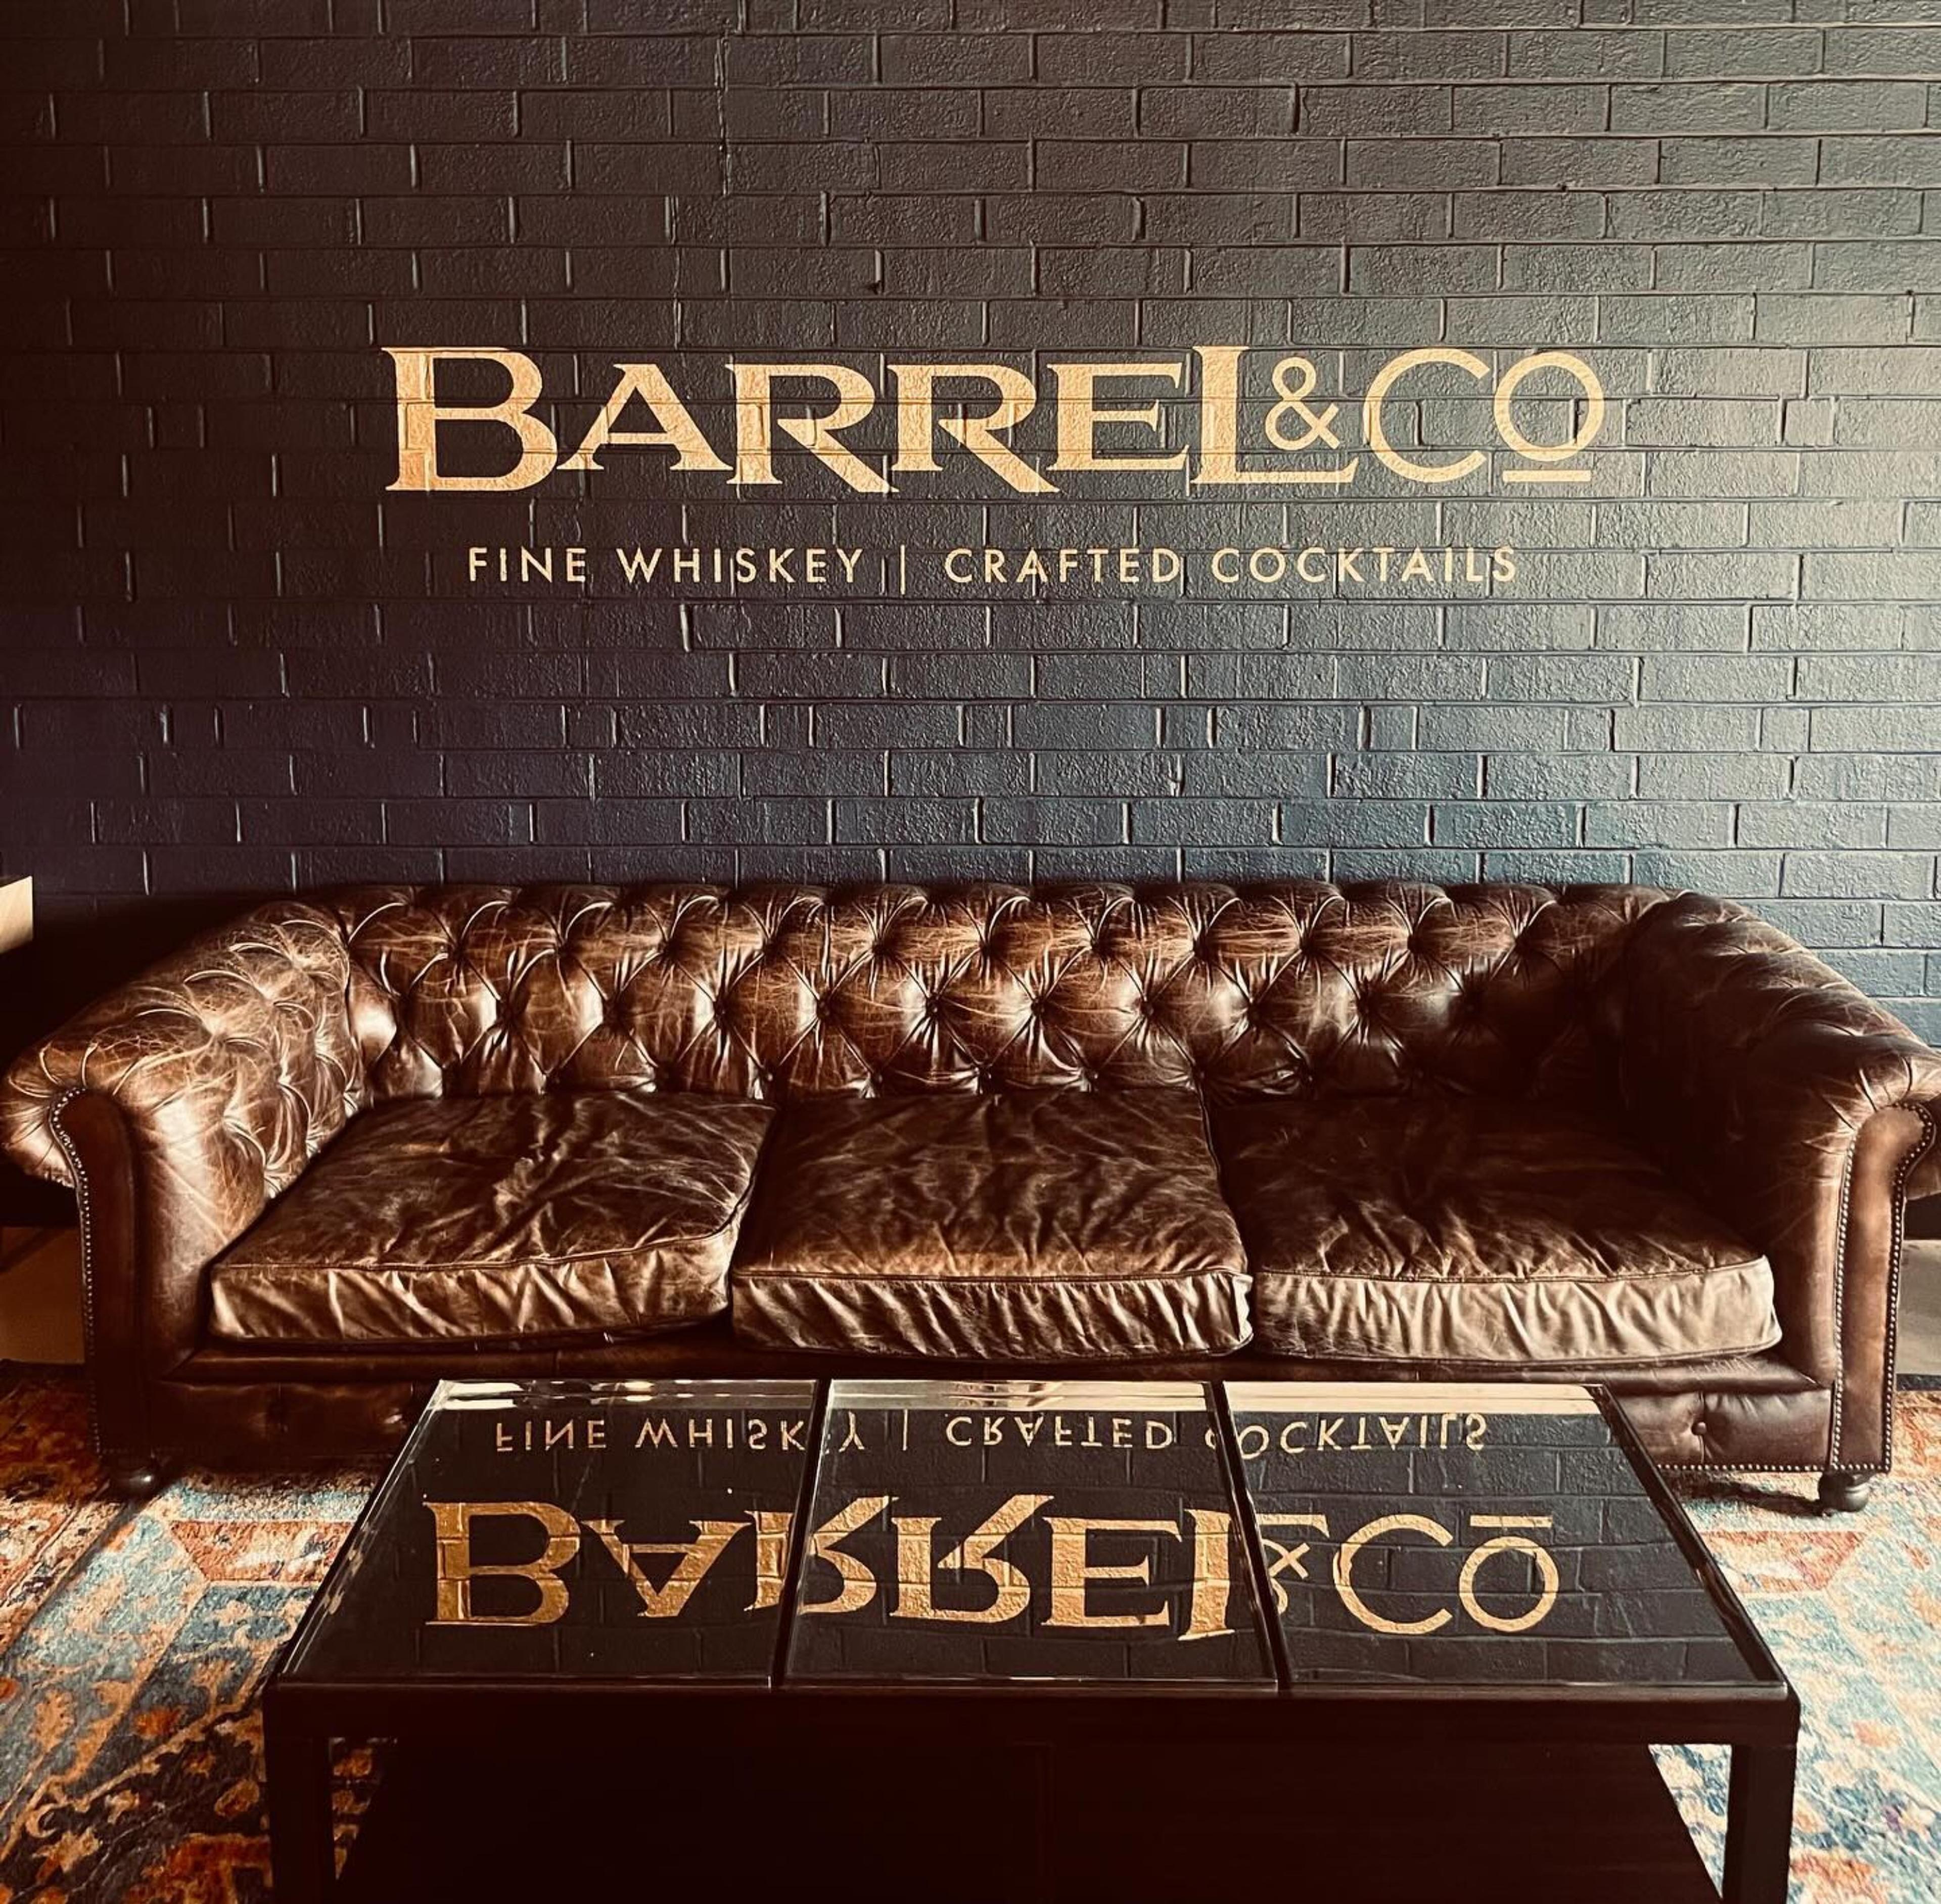 Barrel & Co.